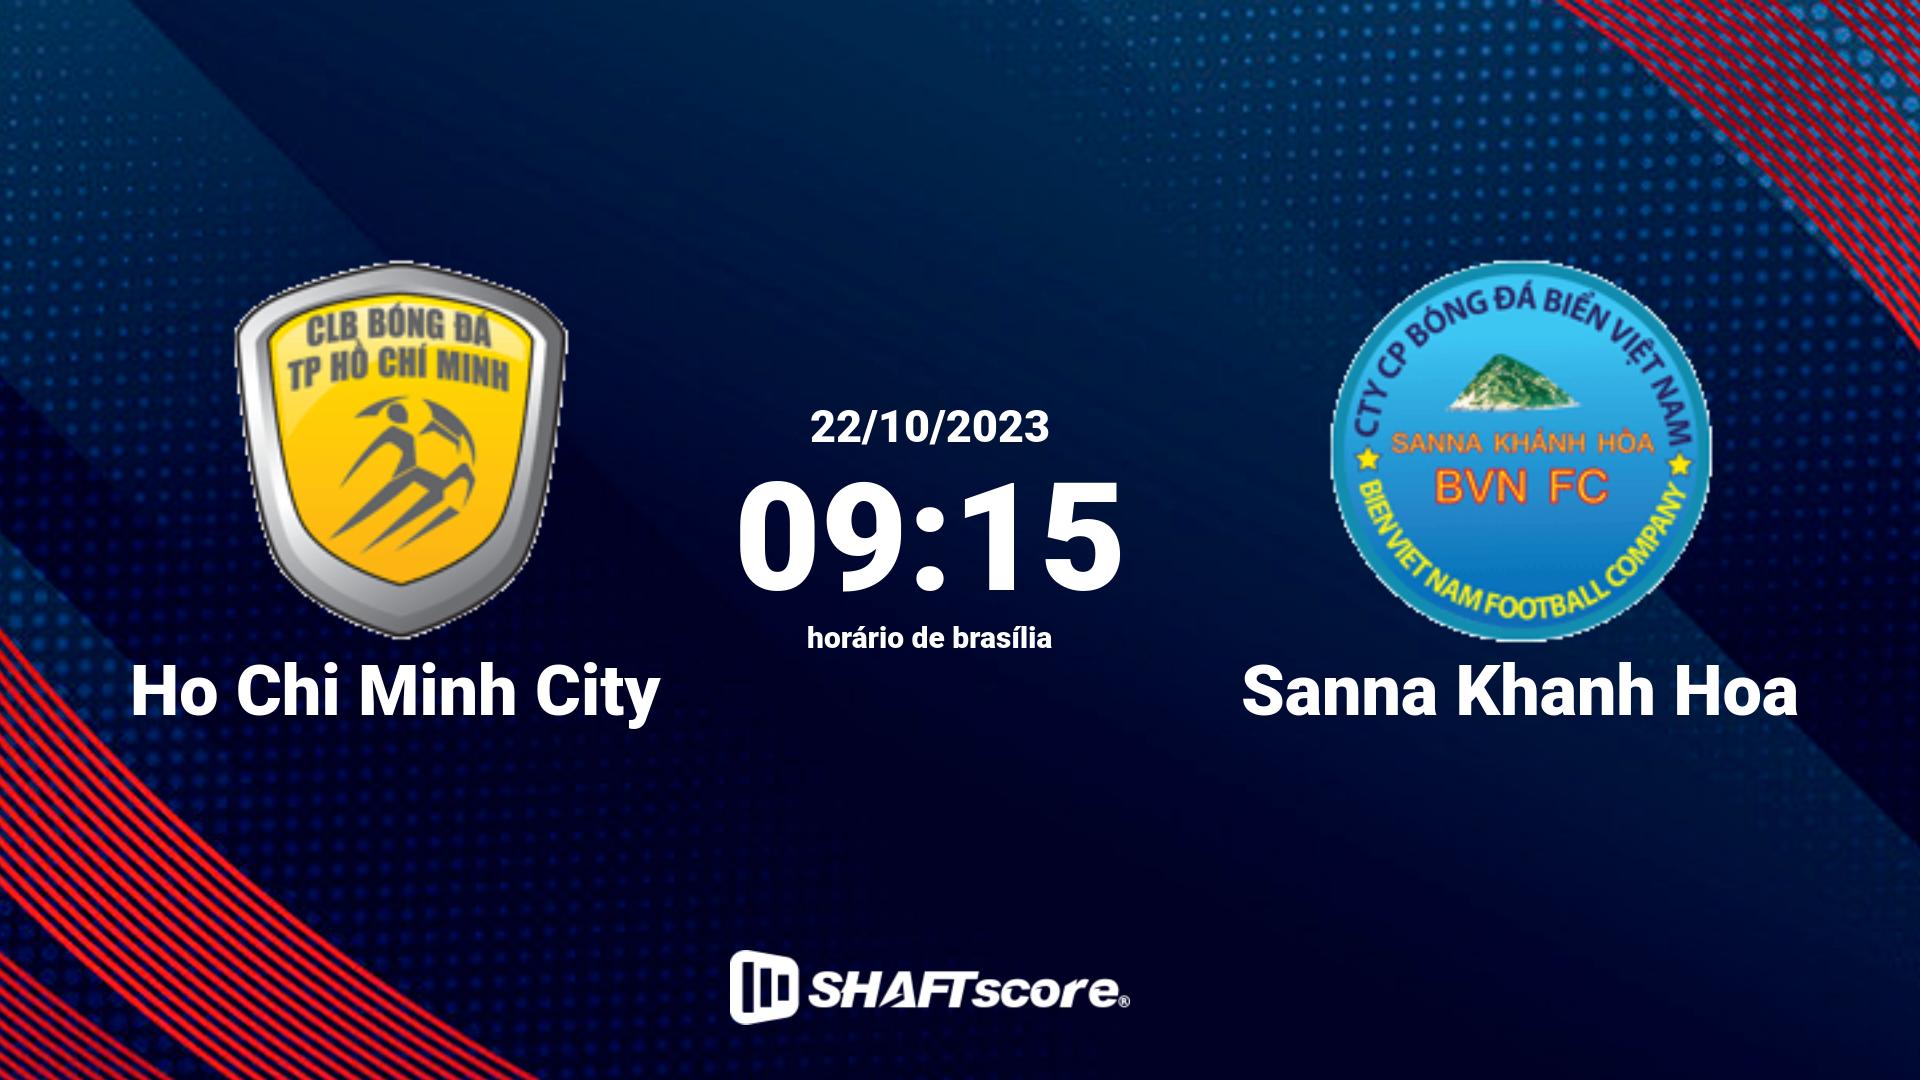 Estatísticas do jogo Ho Chi Minh City vs Sanna Khanh Hoa 22.10 09:15